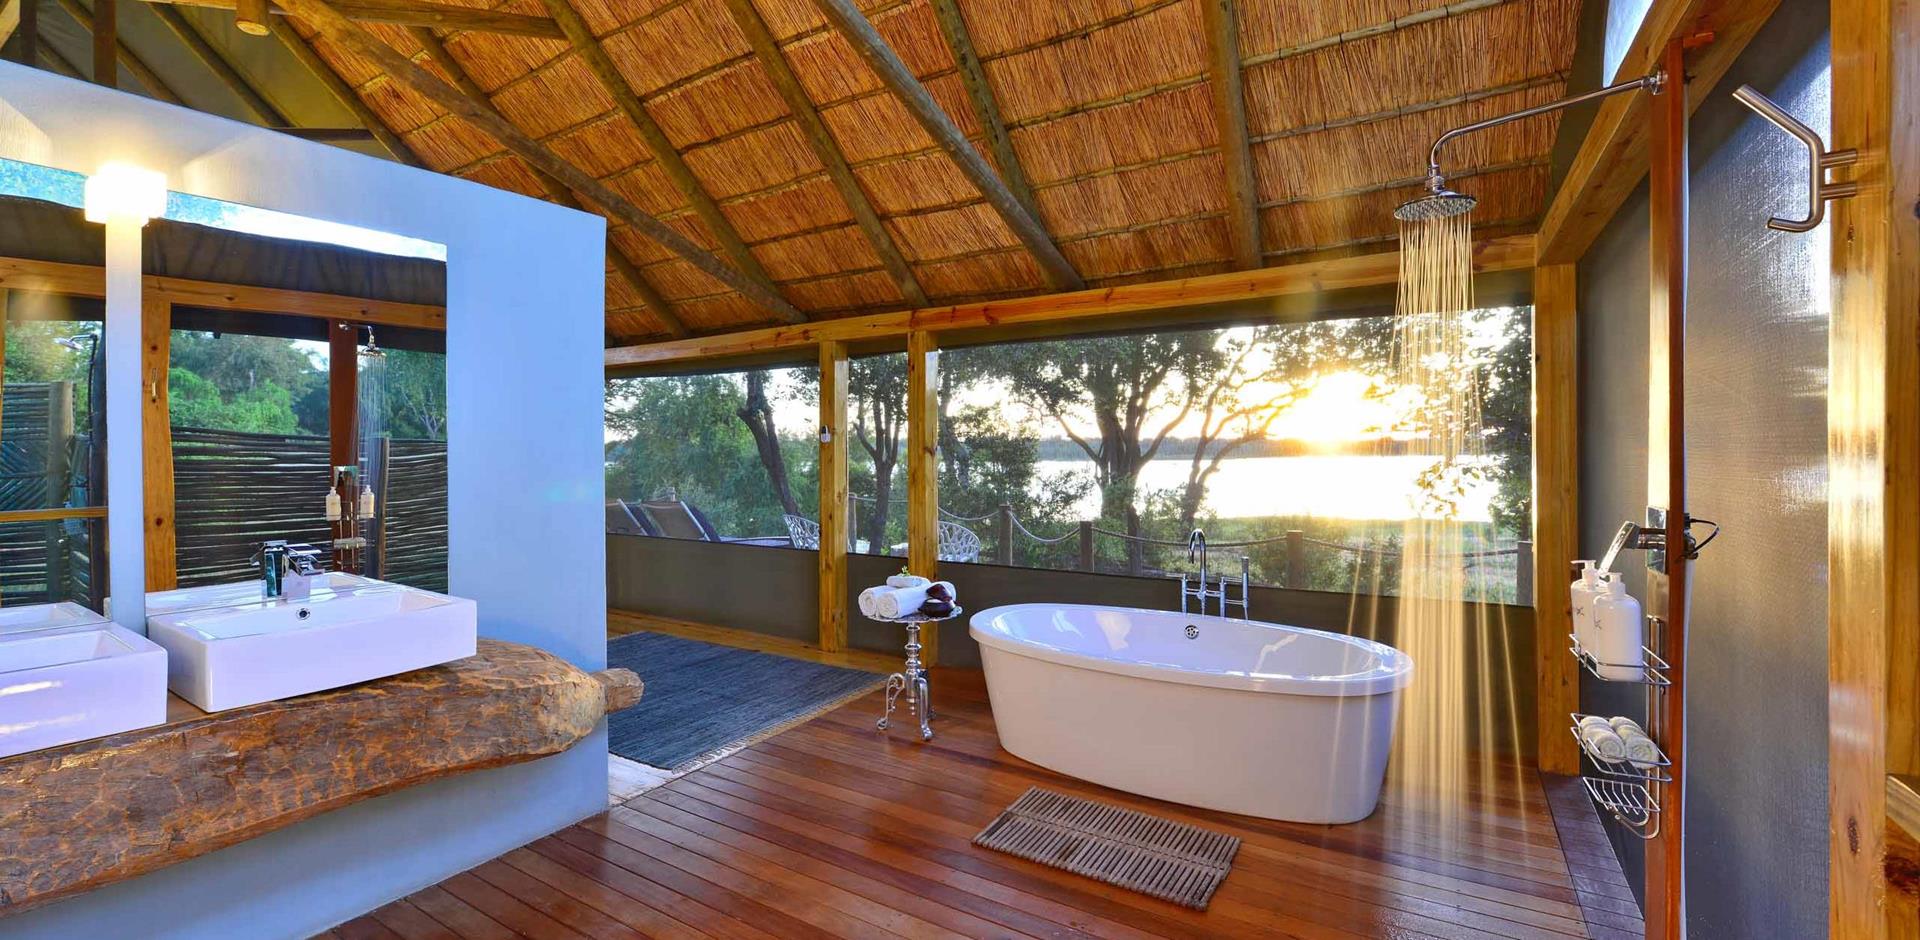 Bathroom, Victoria Falls River Lodge, Zimbabwe, A&K